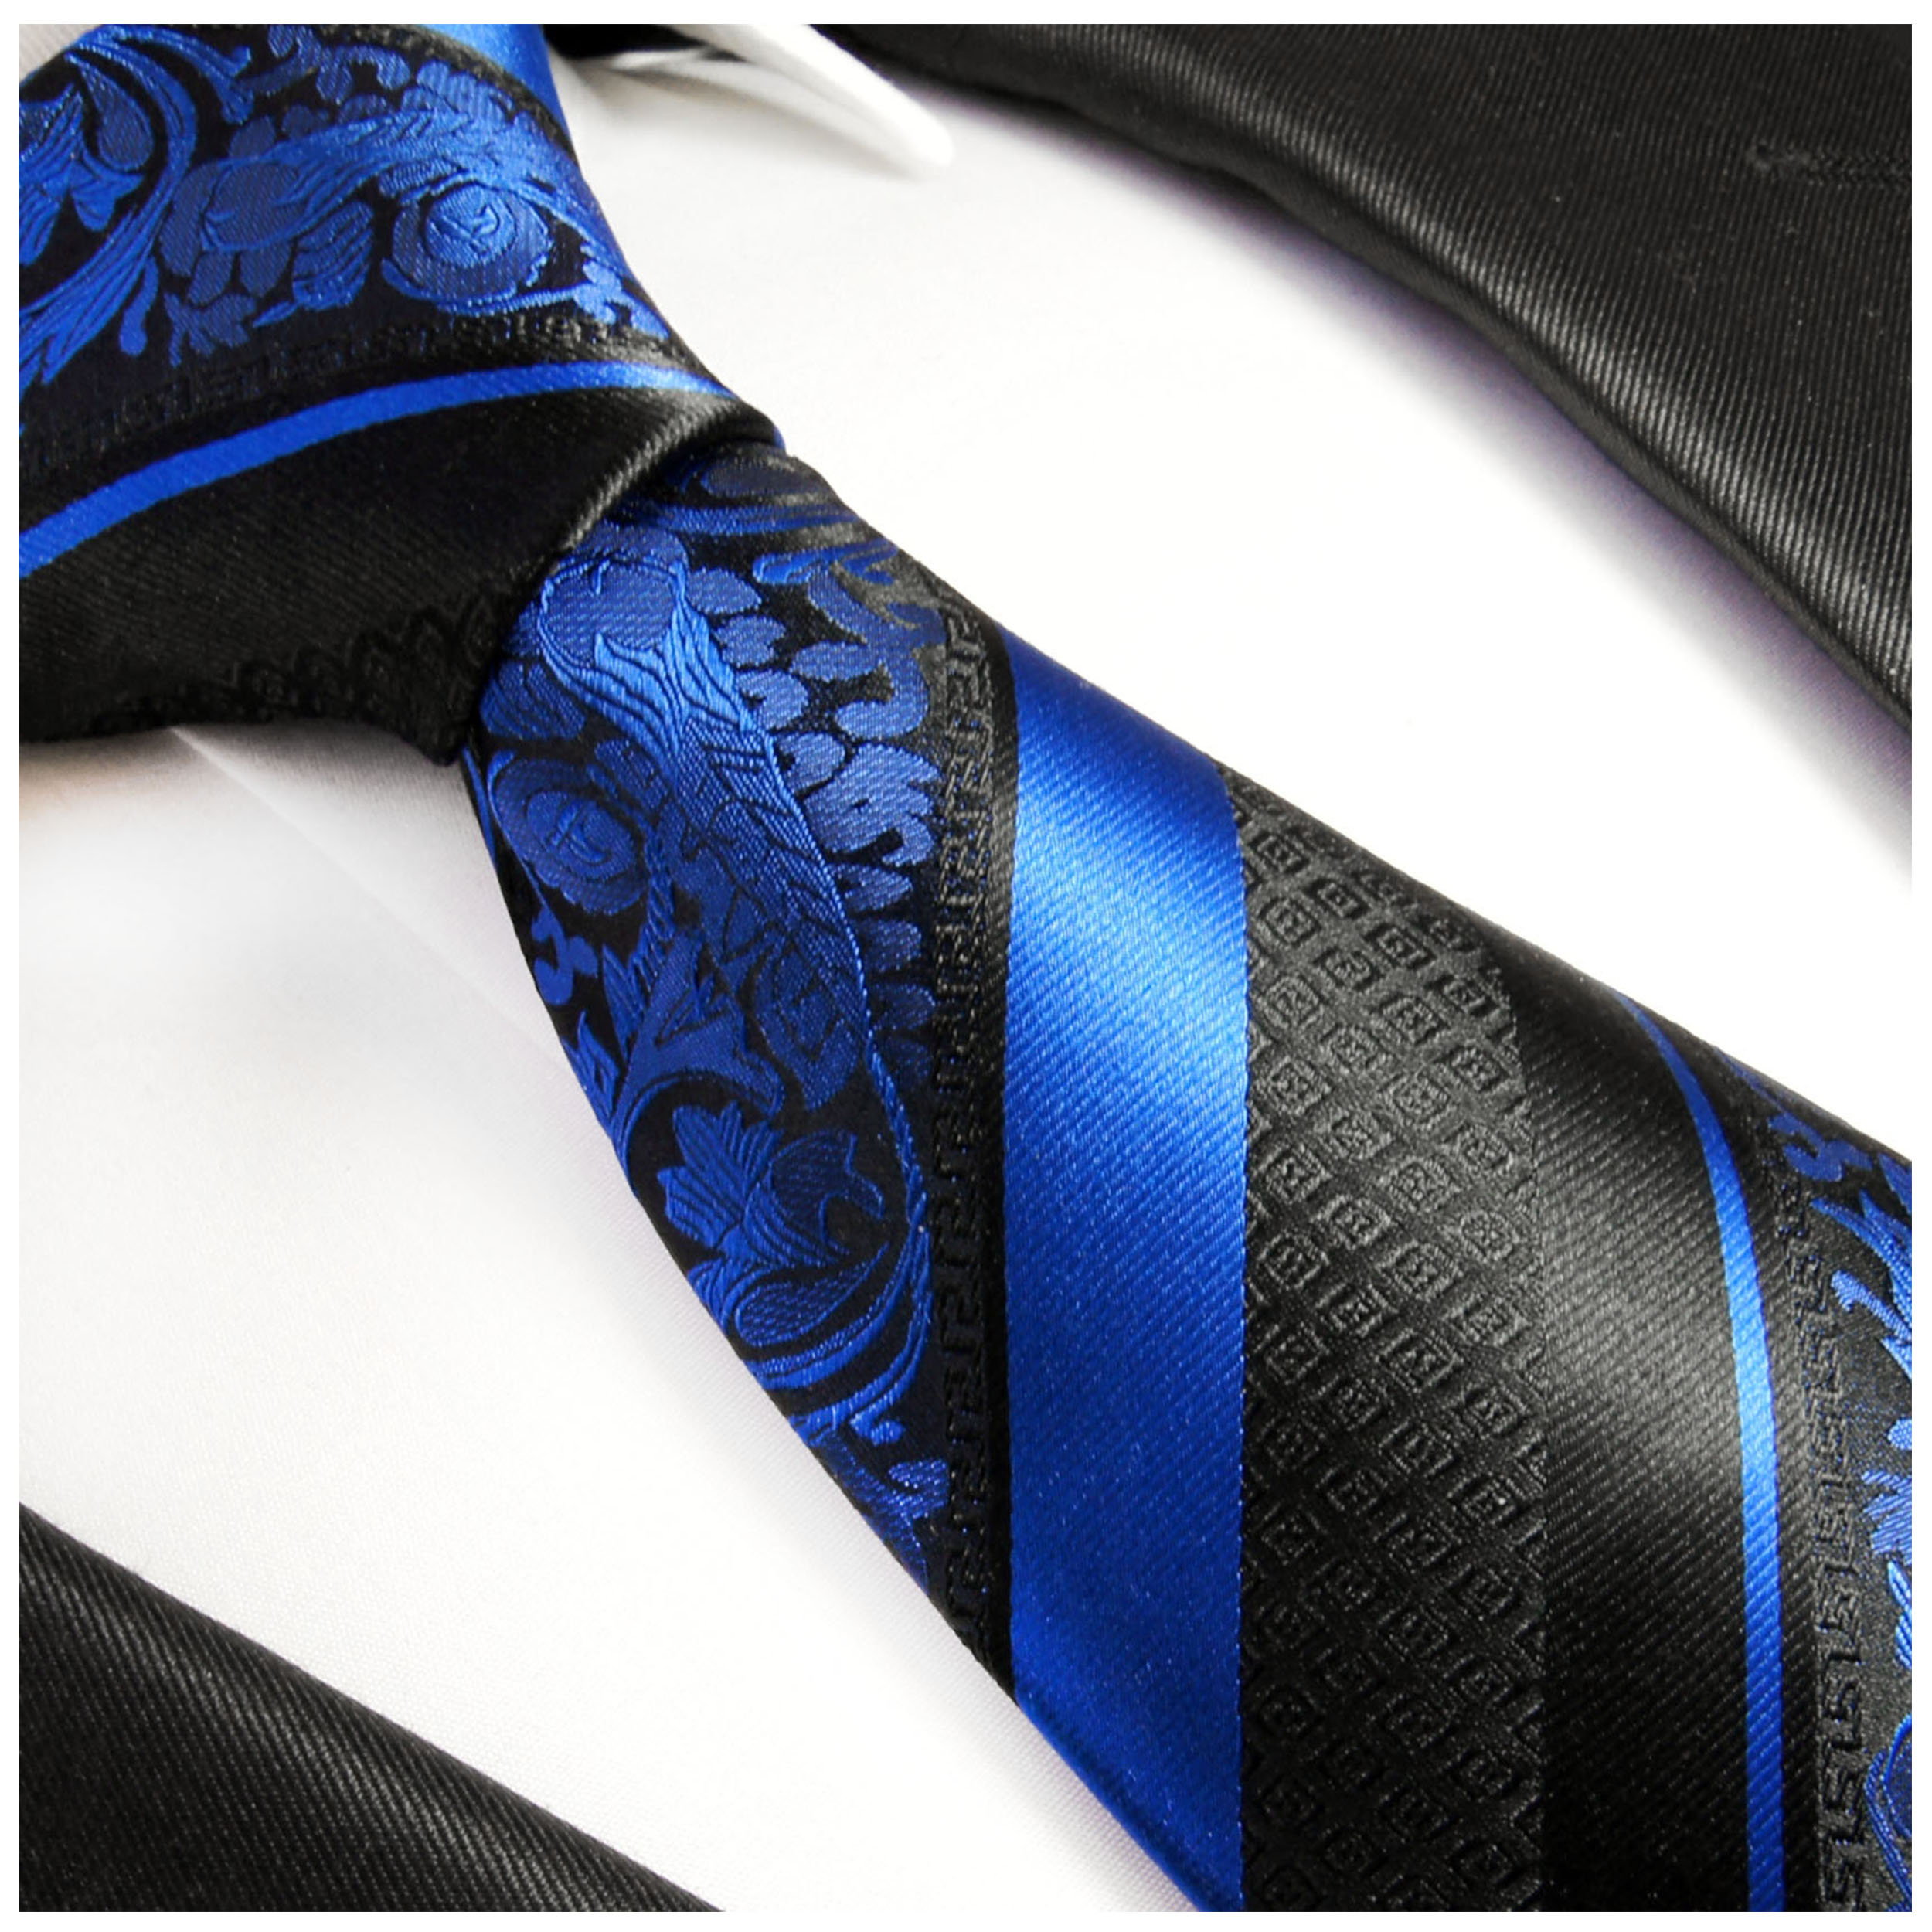 Krawatte blau gestreift 496 | JETZT BESTELLEN - Paul Malone Shop